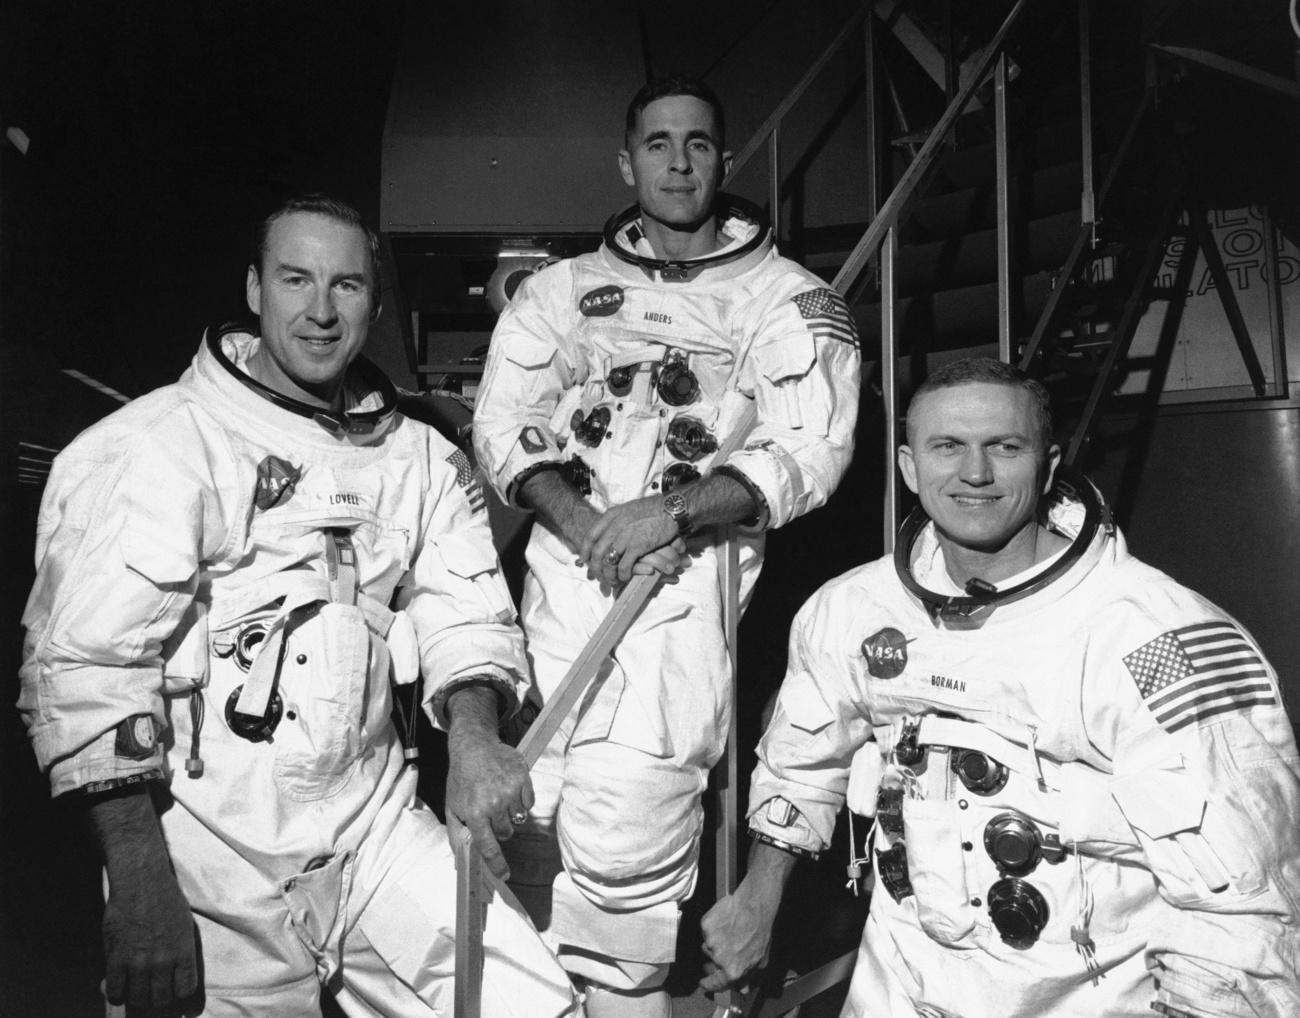 L'équipage d'Apollo 8, le 18 décembre 1968, devant le simulateur de mission au Centre spatial Kennedy, en Floride, avant de s'entraîner en vue de sa mission orbitale lunaire de six jours. De gauche à droite, James Lovell, pilote du module de commande, William Anders, pilote du module lunaire, et Frank Borman, commandant. [KEYSTONE]